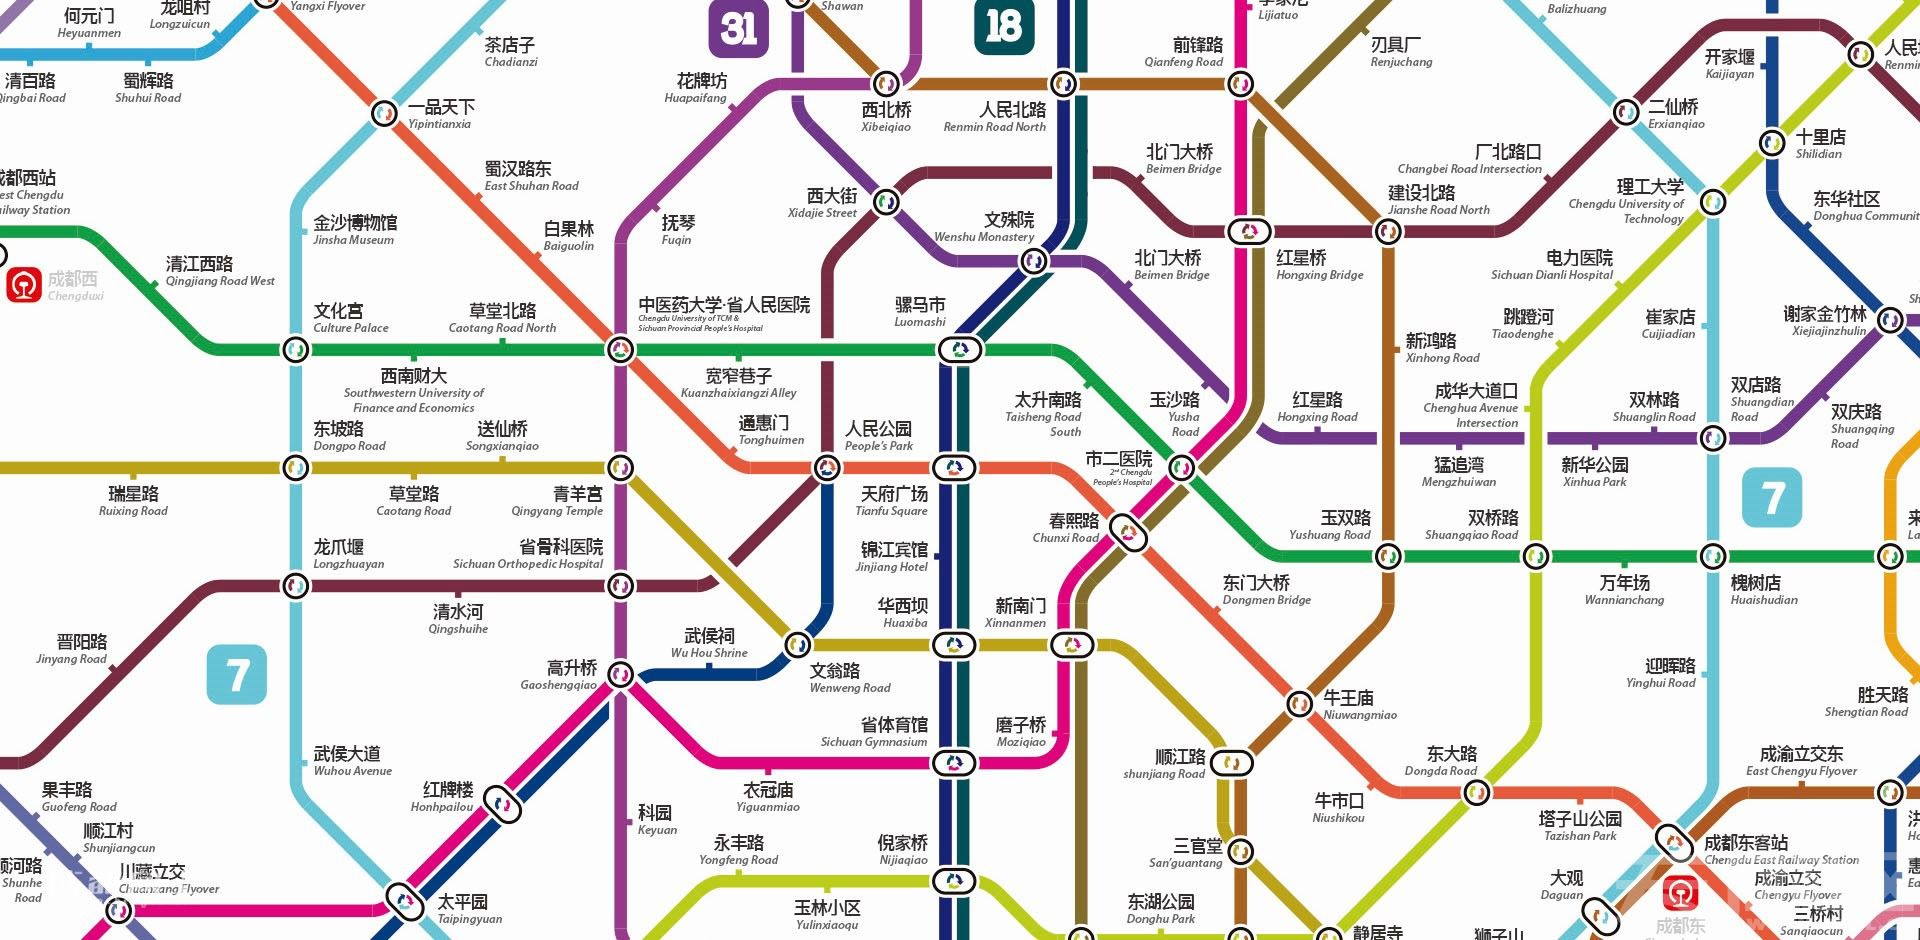 成都地铁最新规划图!